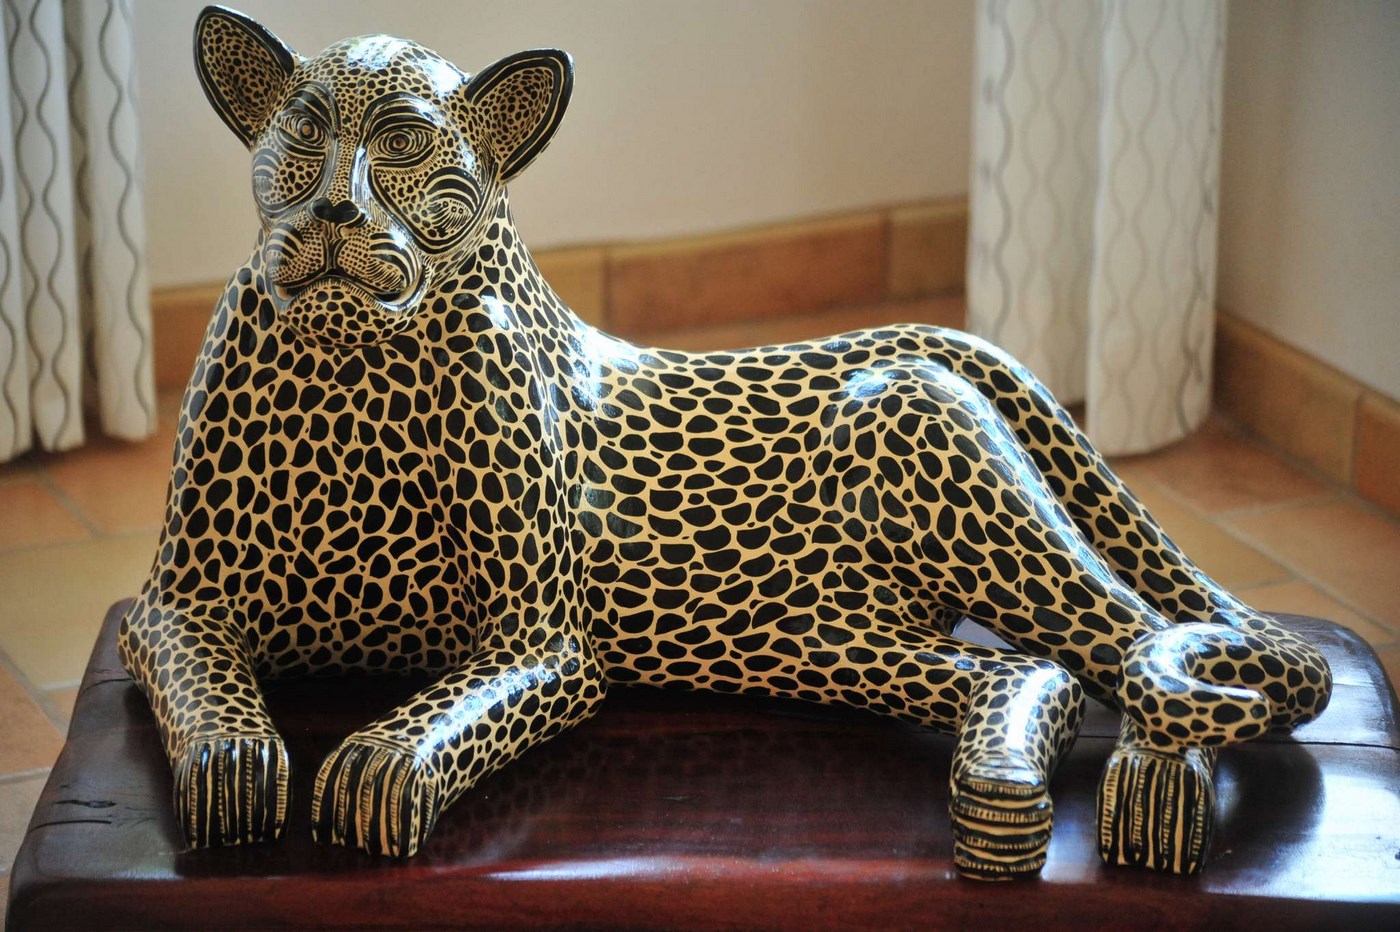 Jaguar Ceramic